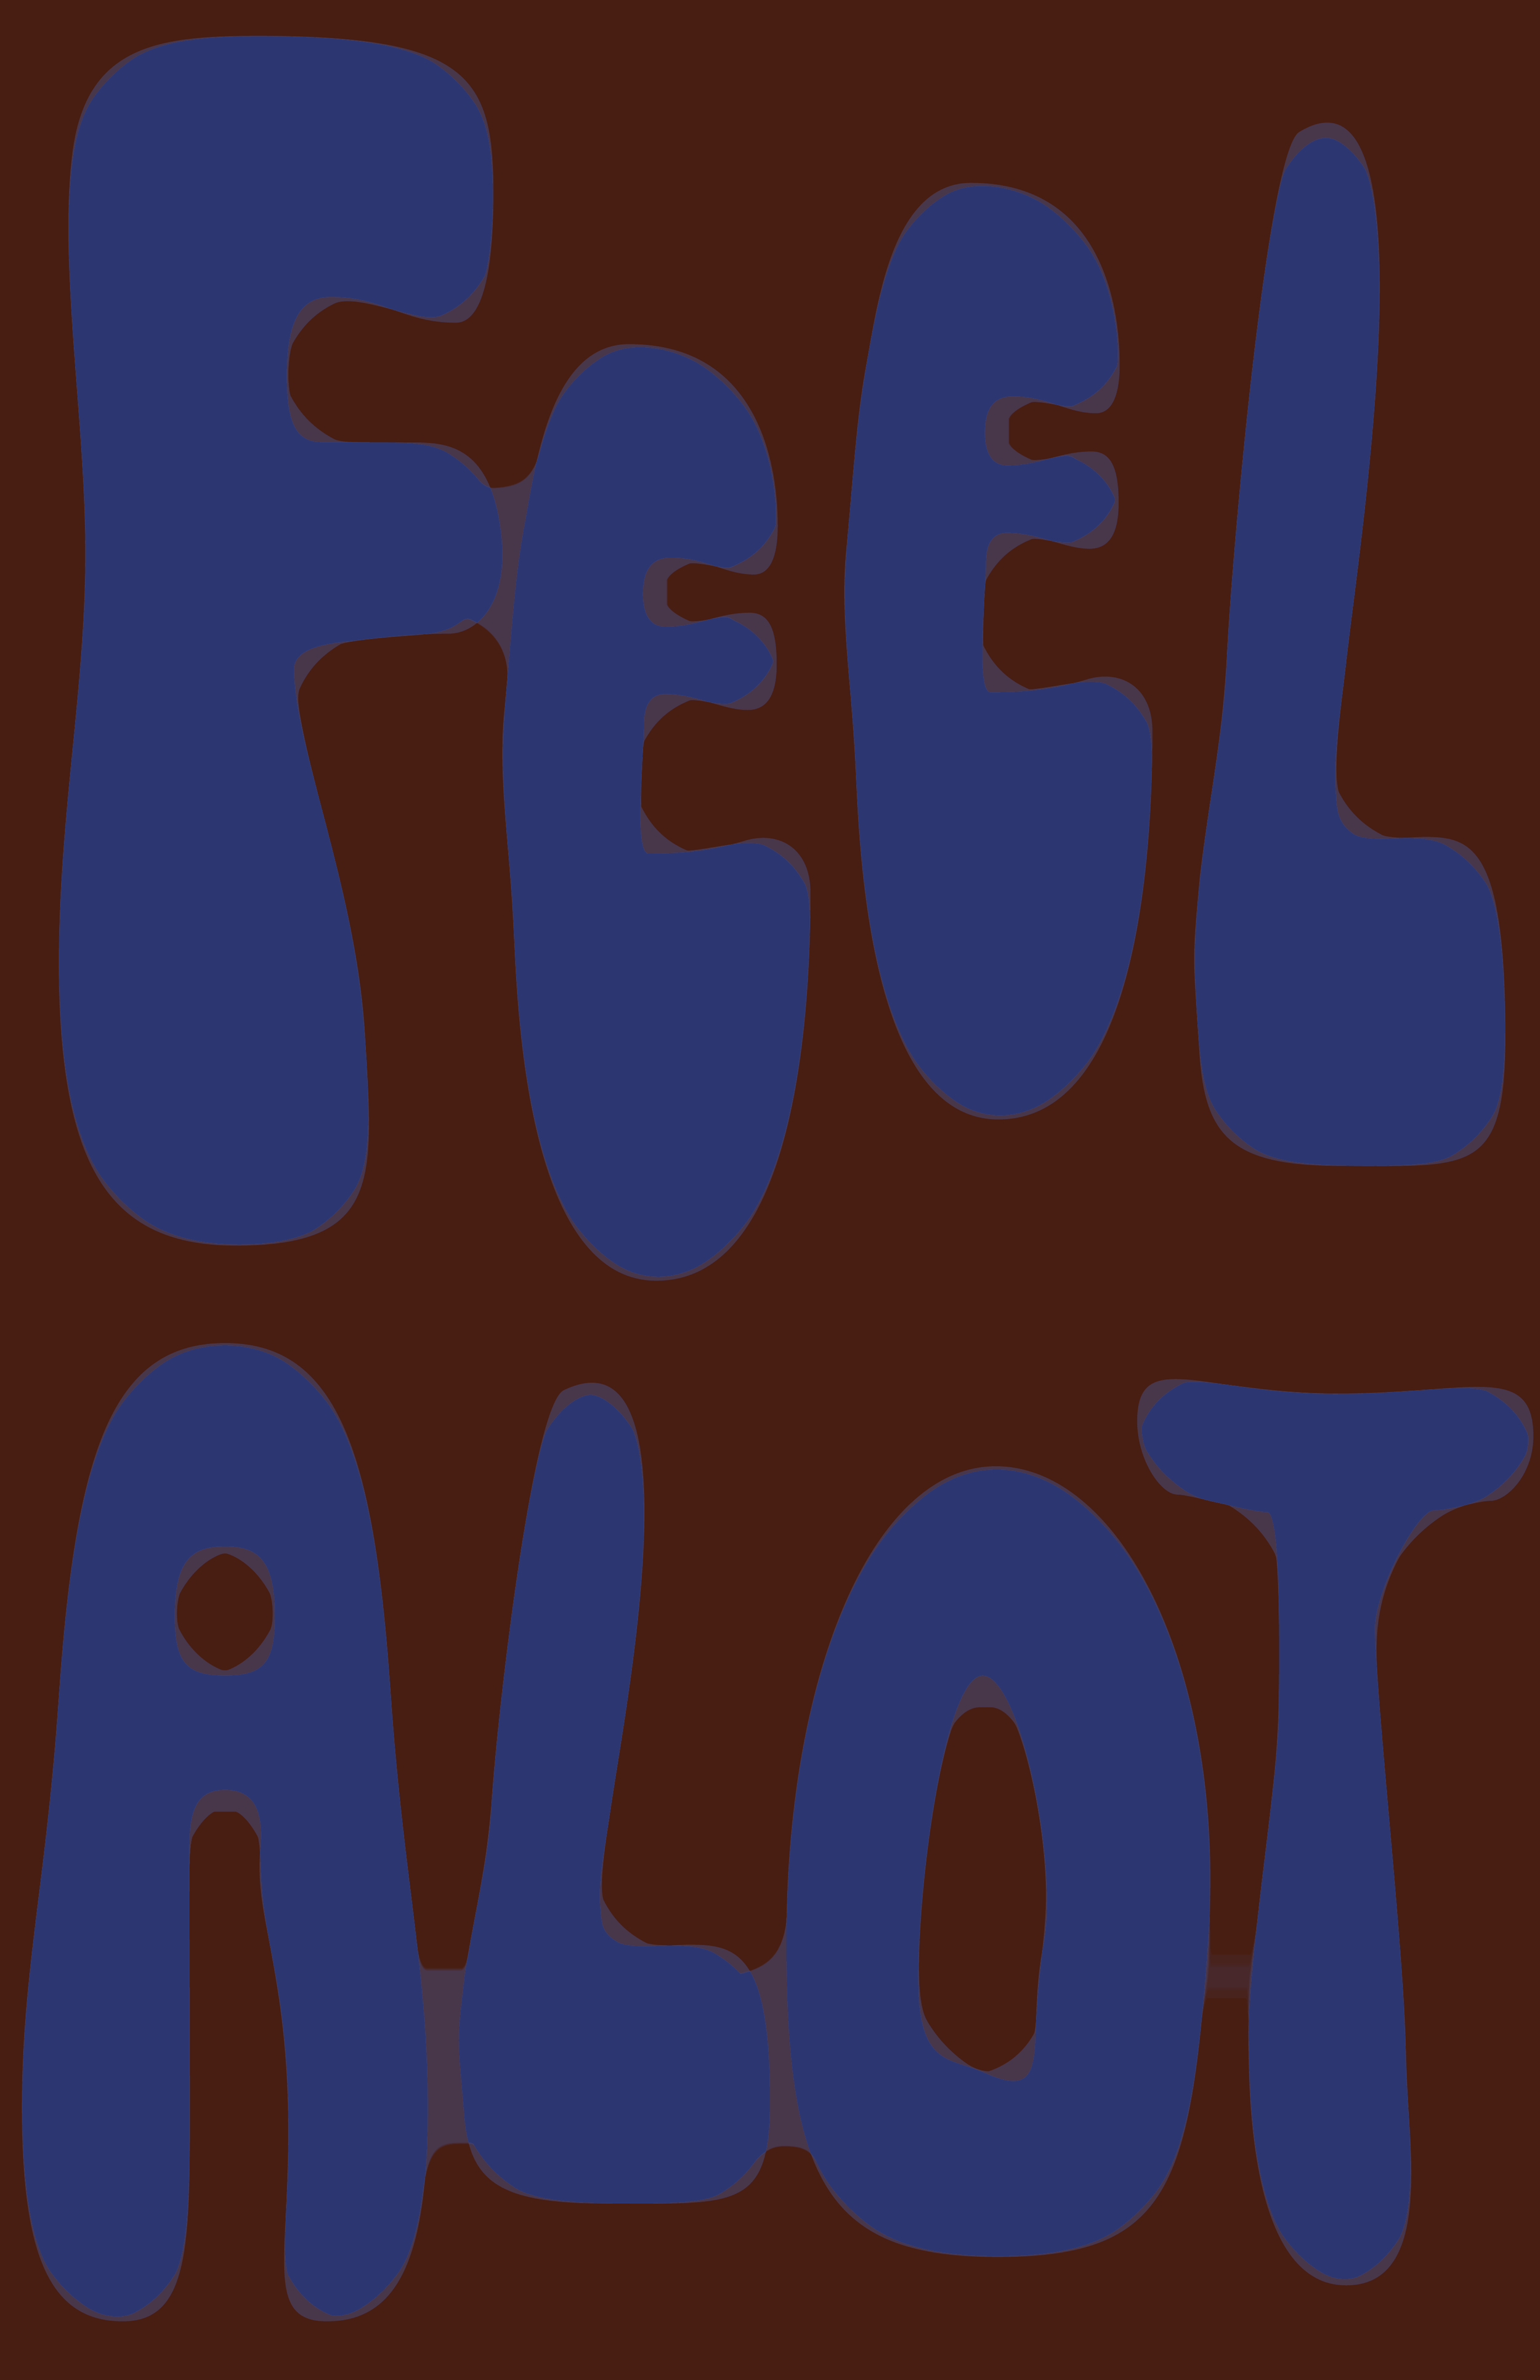 feelalothealalot-01.1.png